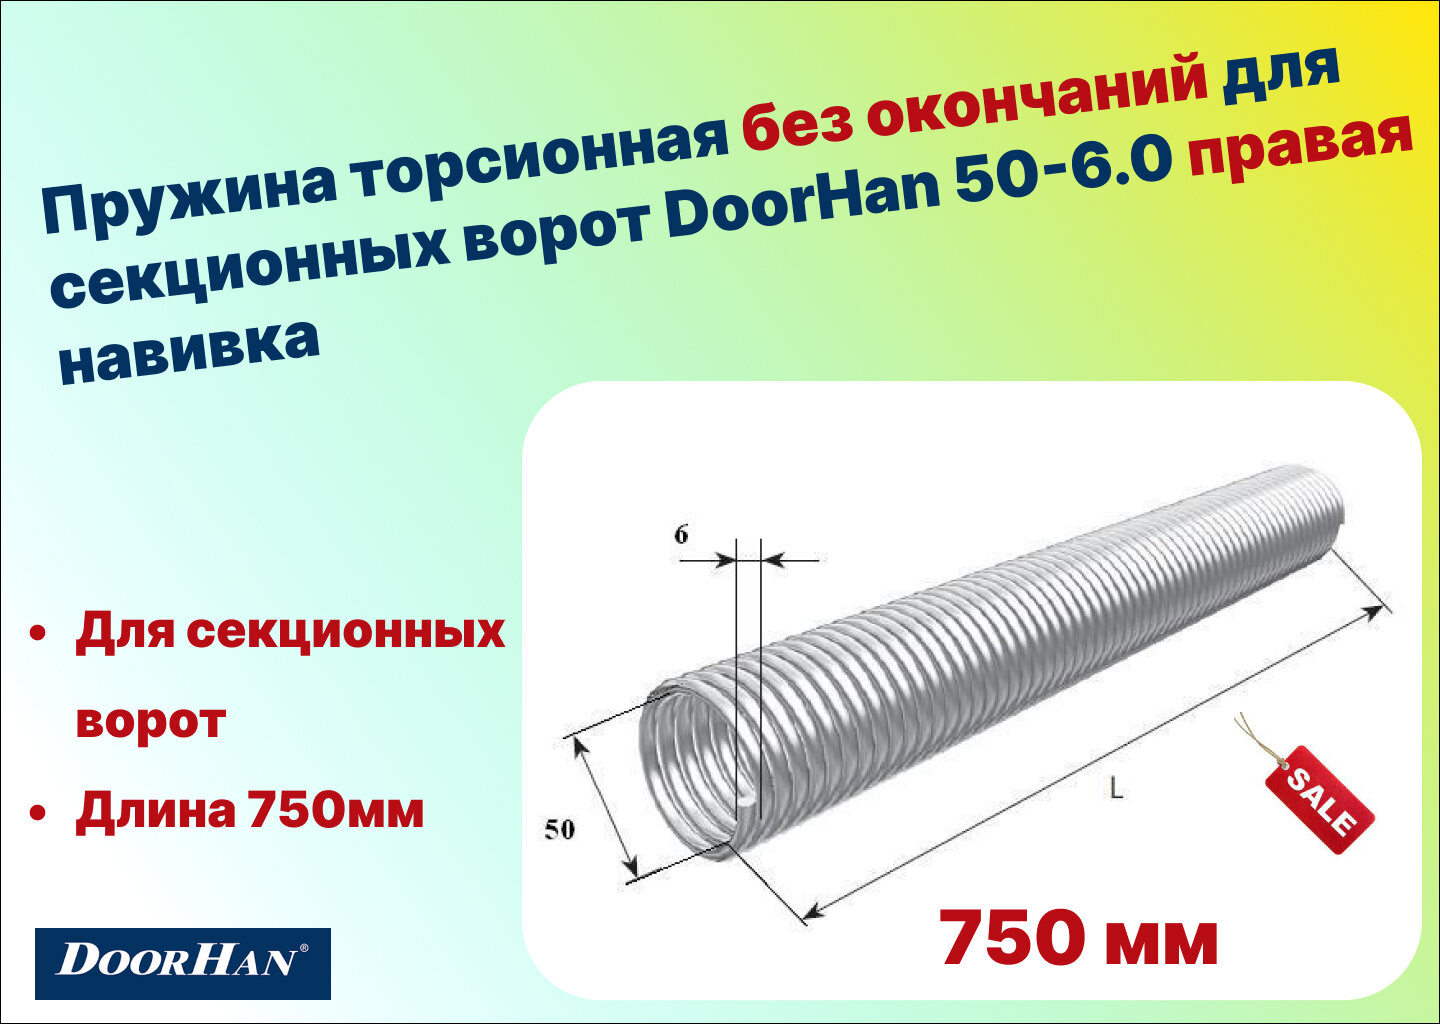 Пружина торсионная без окончаний для секционных ворот DoorHan 50-6.0 правая навивка длина 750 мм (32060/mR/RAL7004)